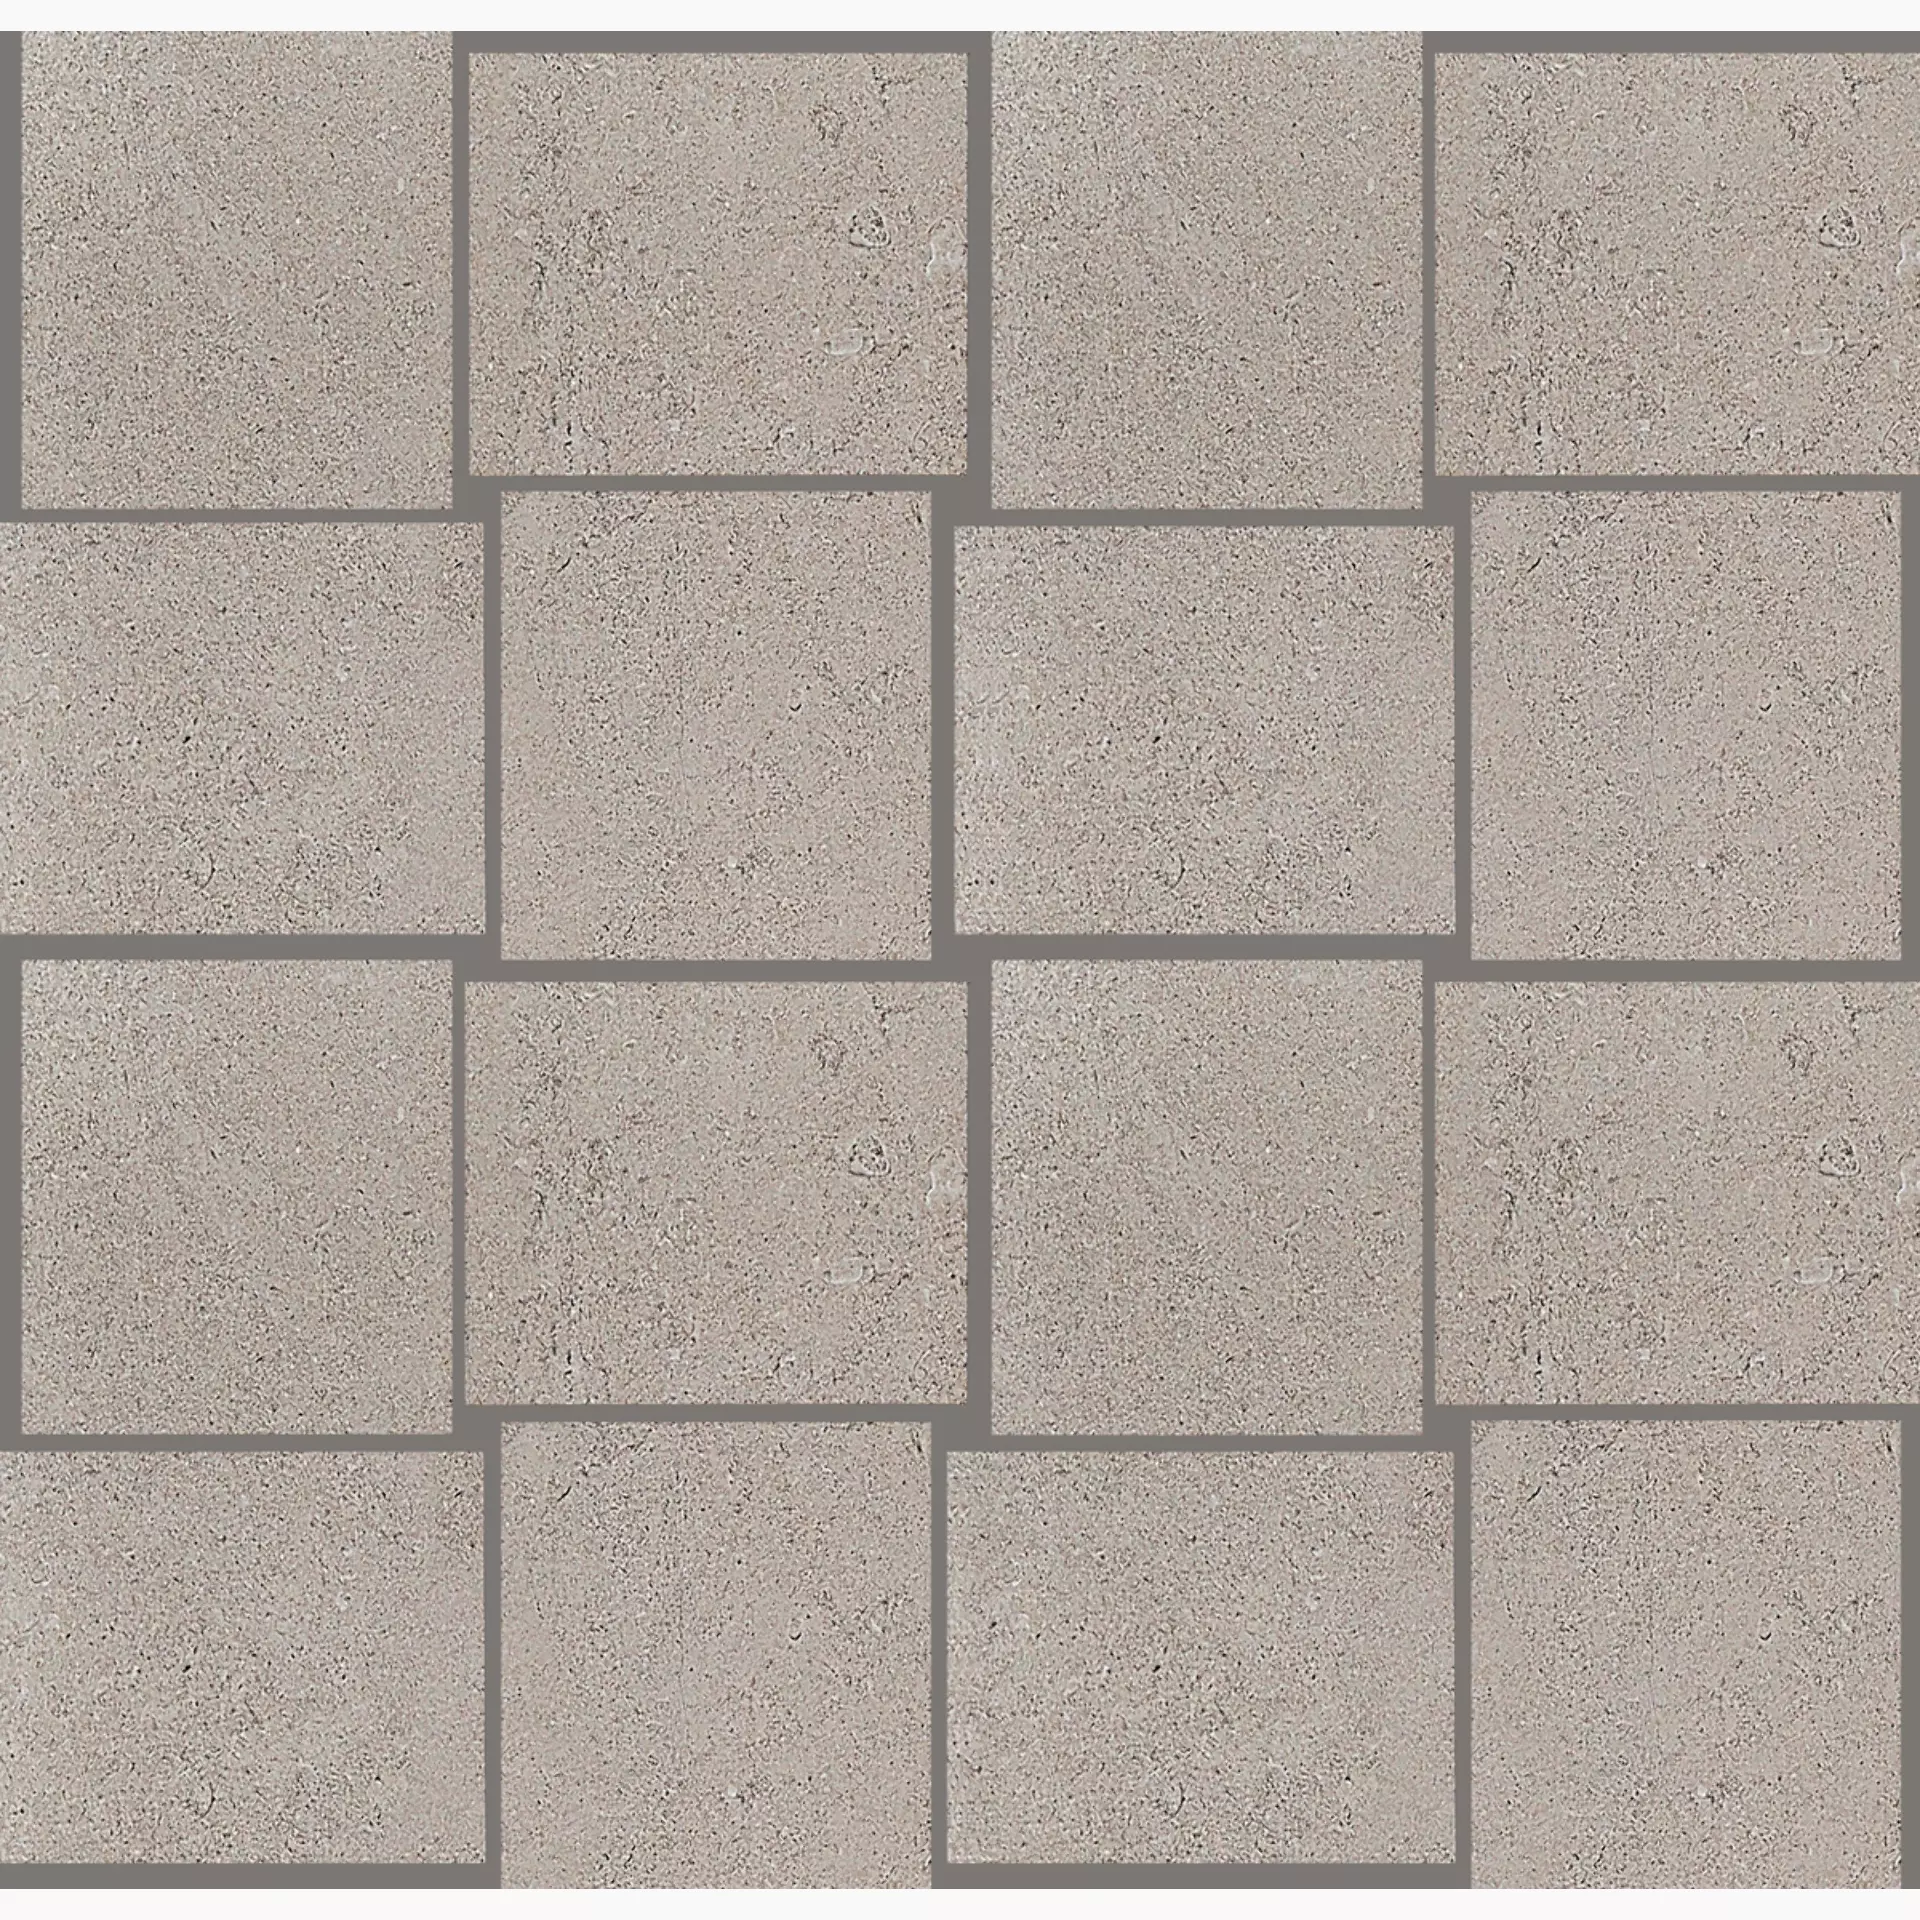 Ragno Realstone Jerusalem White Naturale – Matt Mosaic R122 naturale – matt 30x30cm 9,5mm